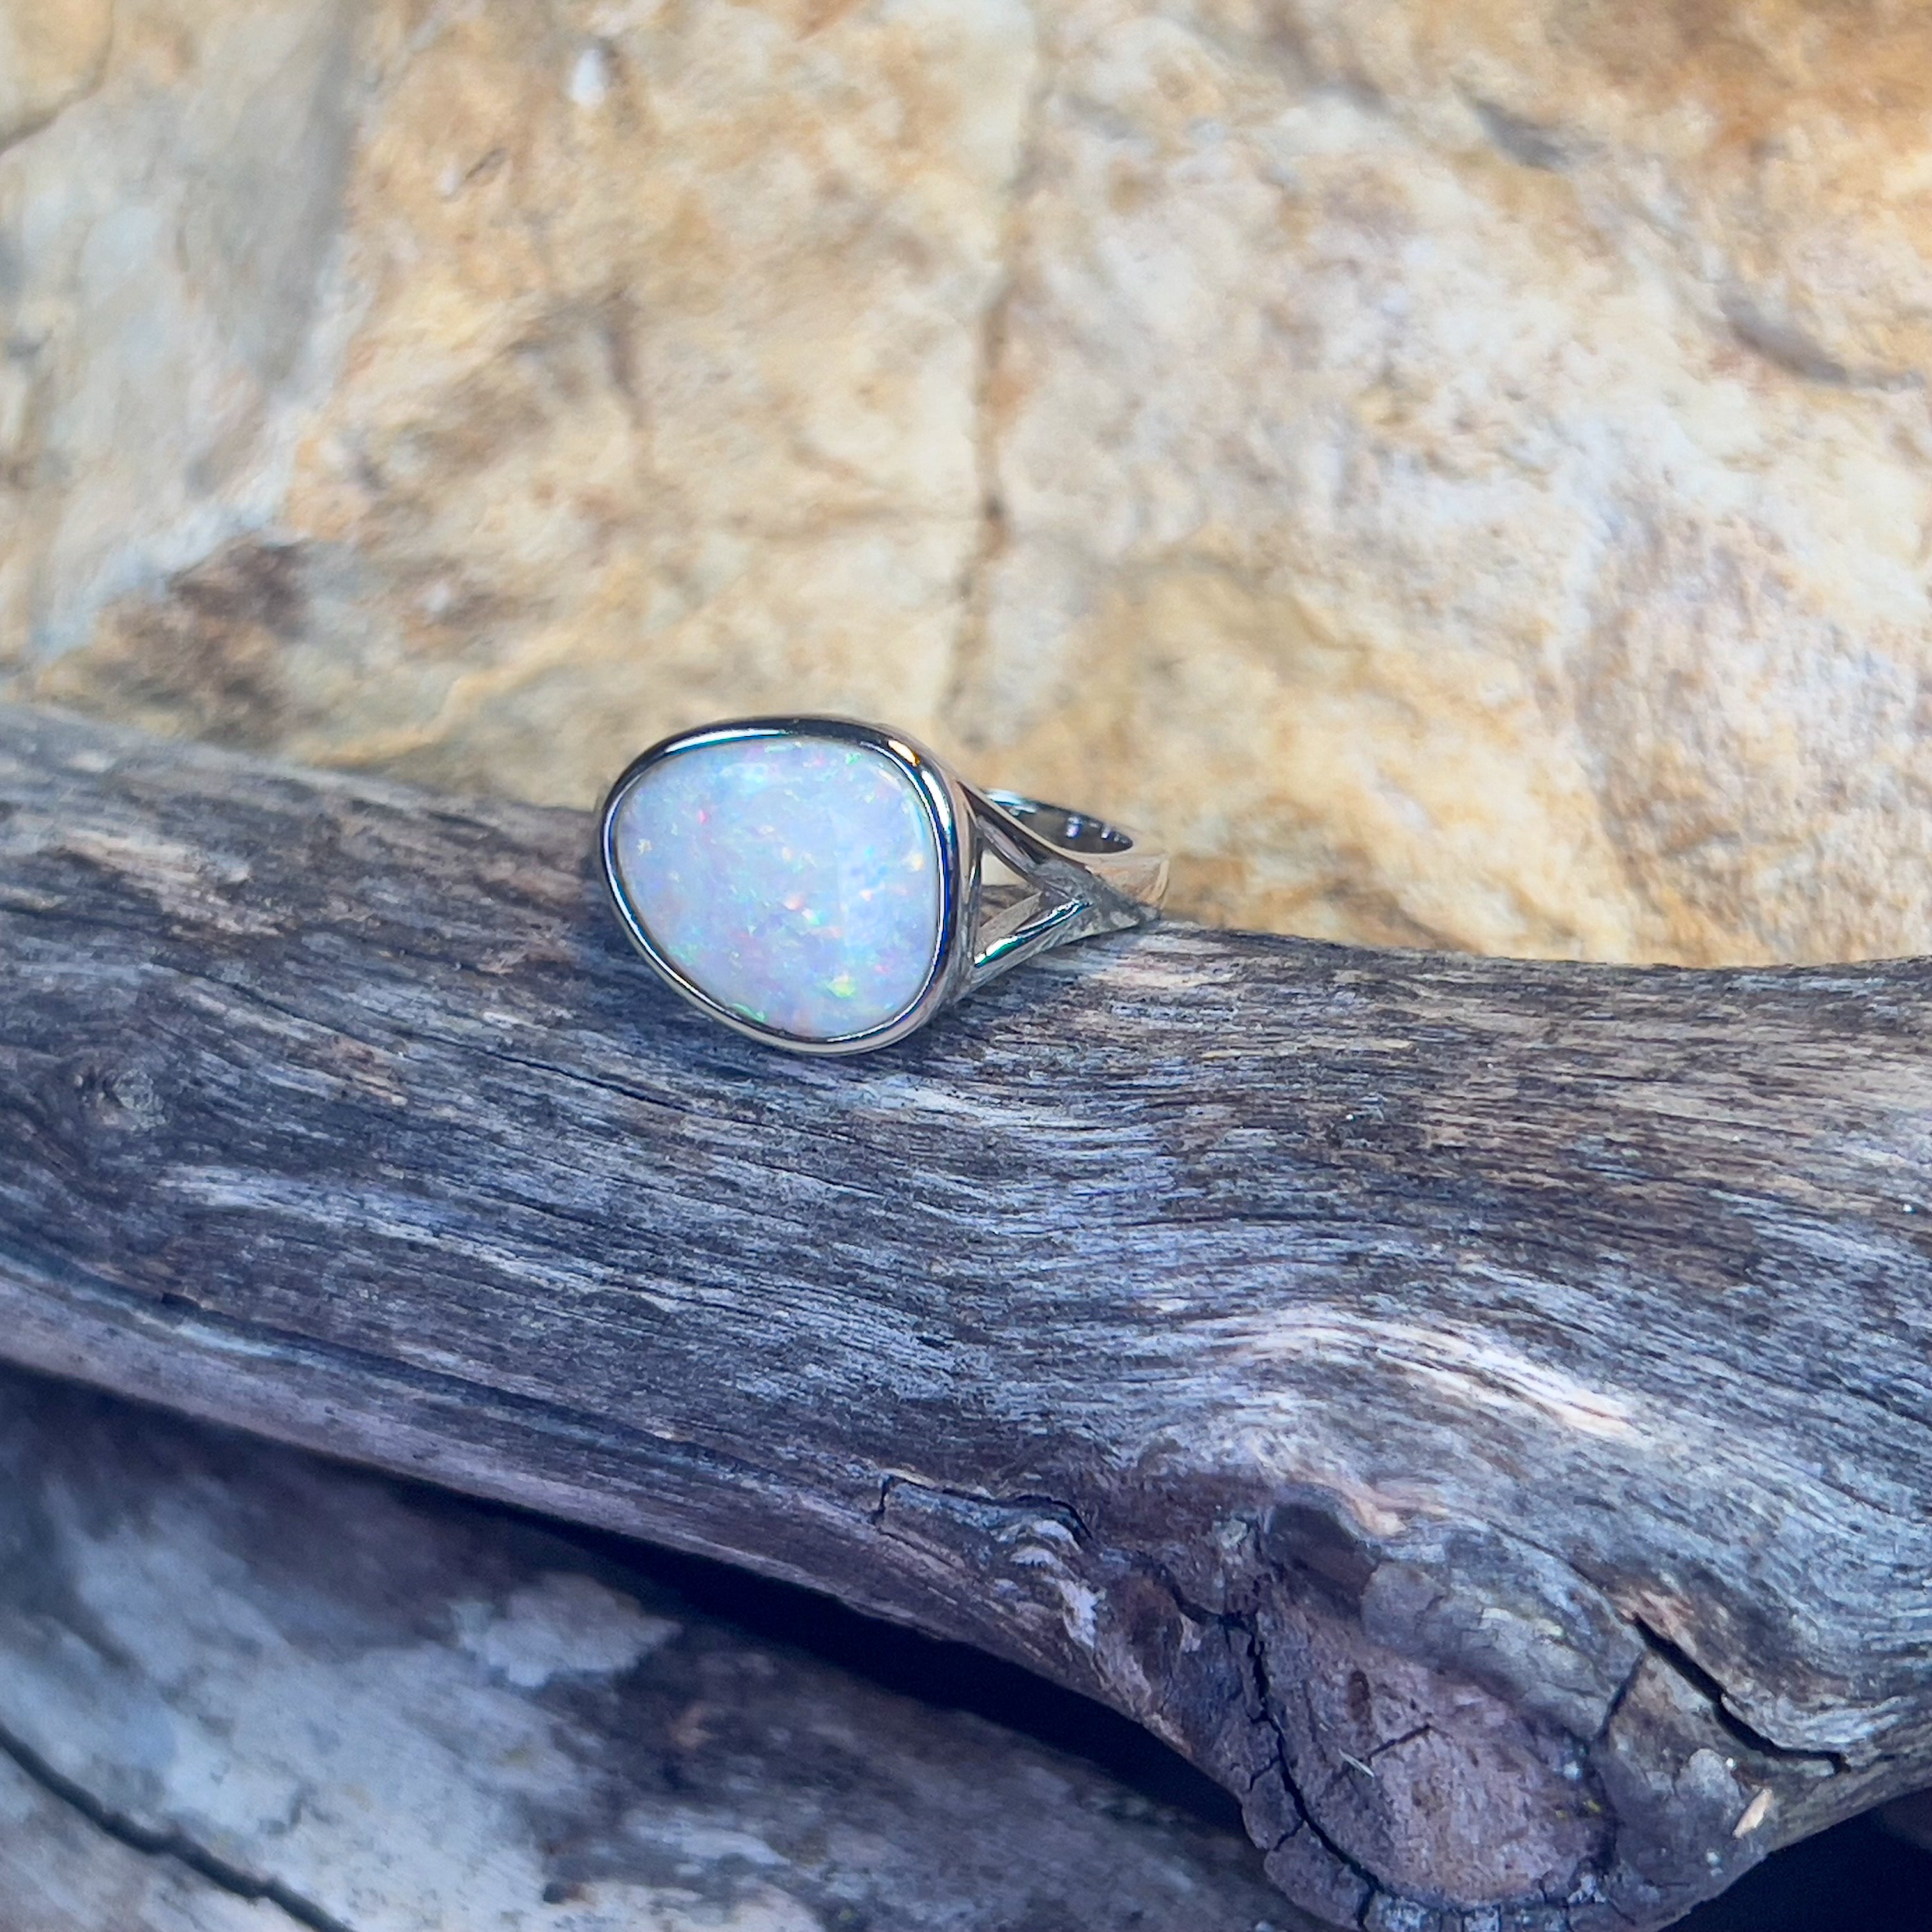 Sterling Silver bezel set white opal 2.2ct ring - Masterpiece Jewellery Opal & Gems Sydney Australia | Online Shop